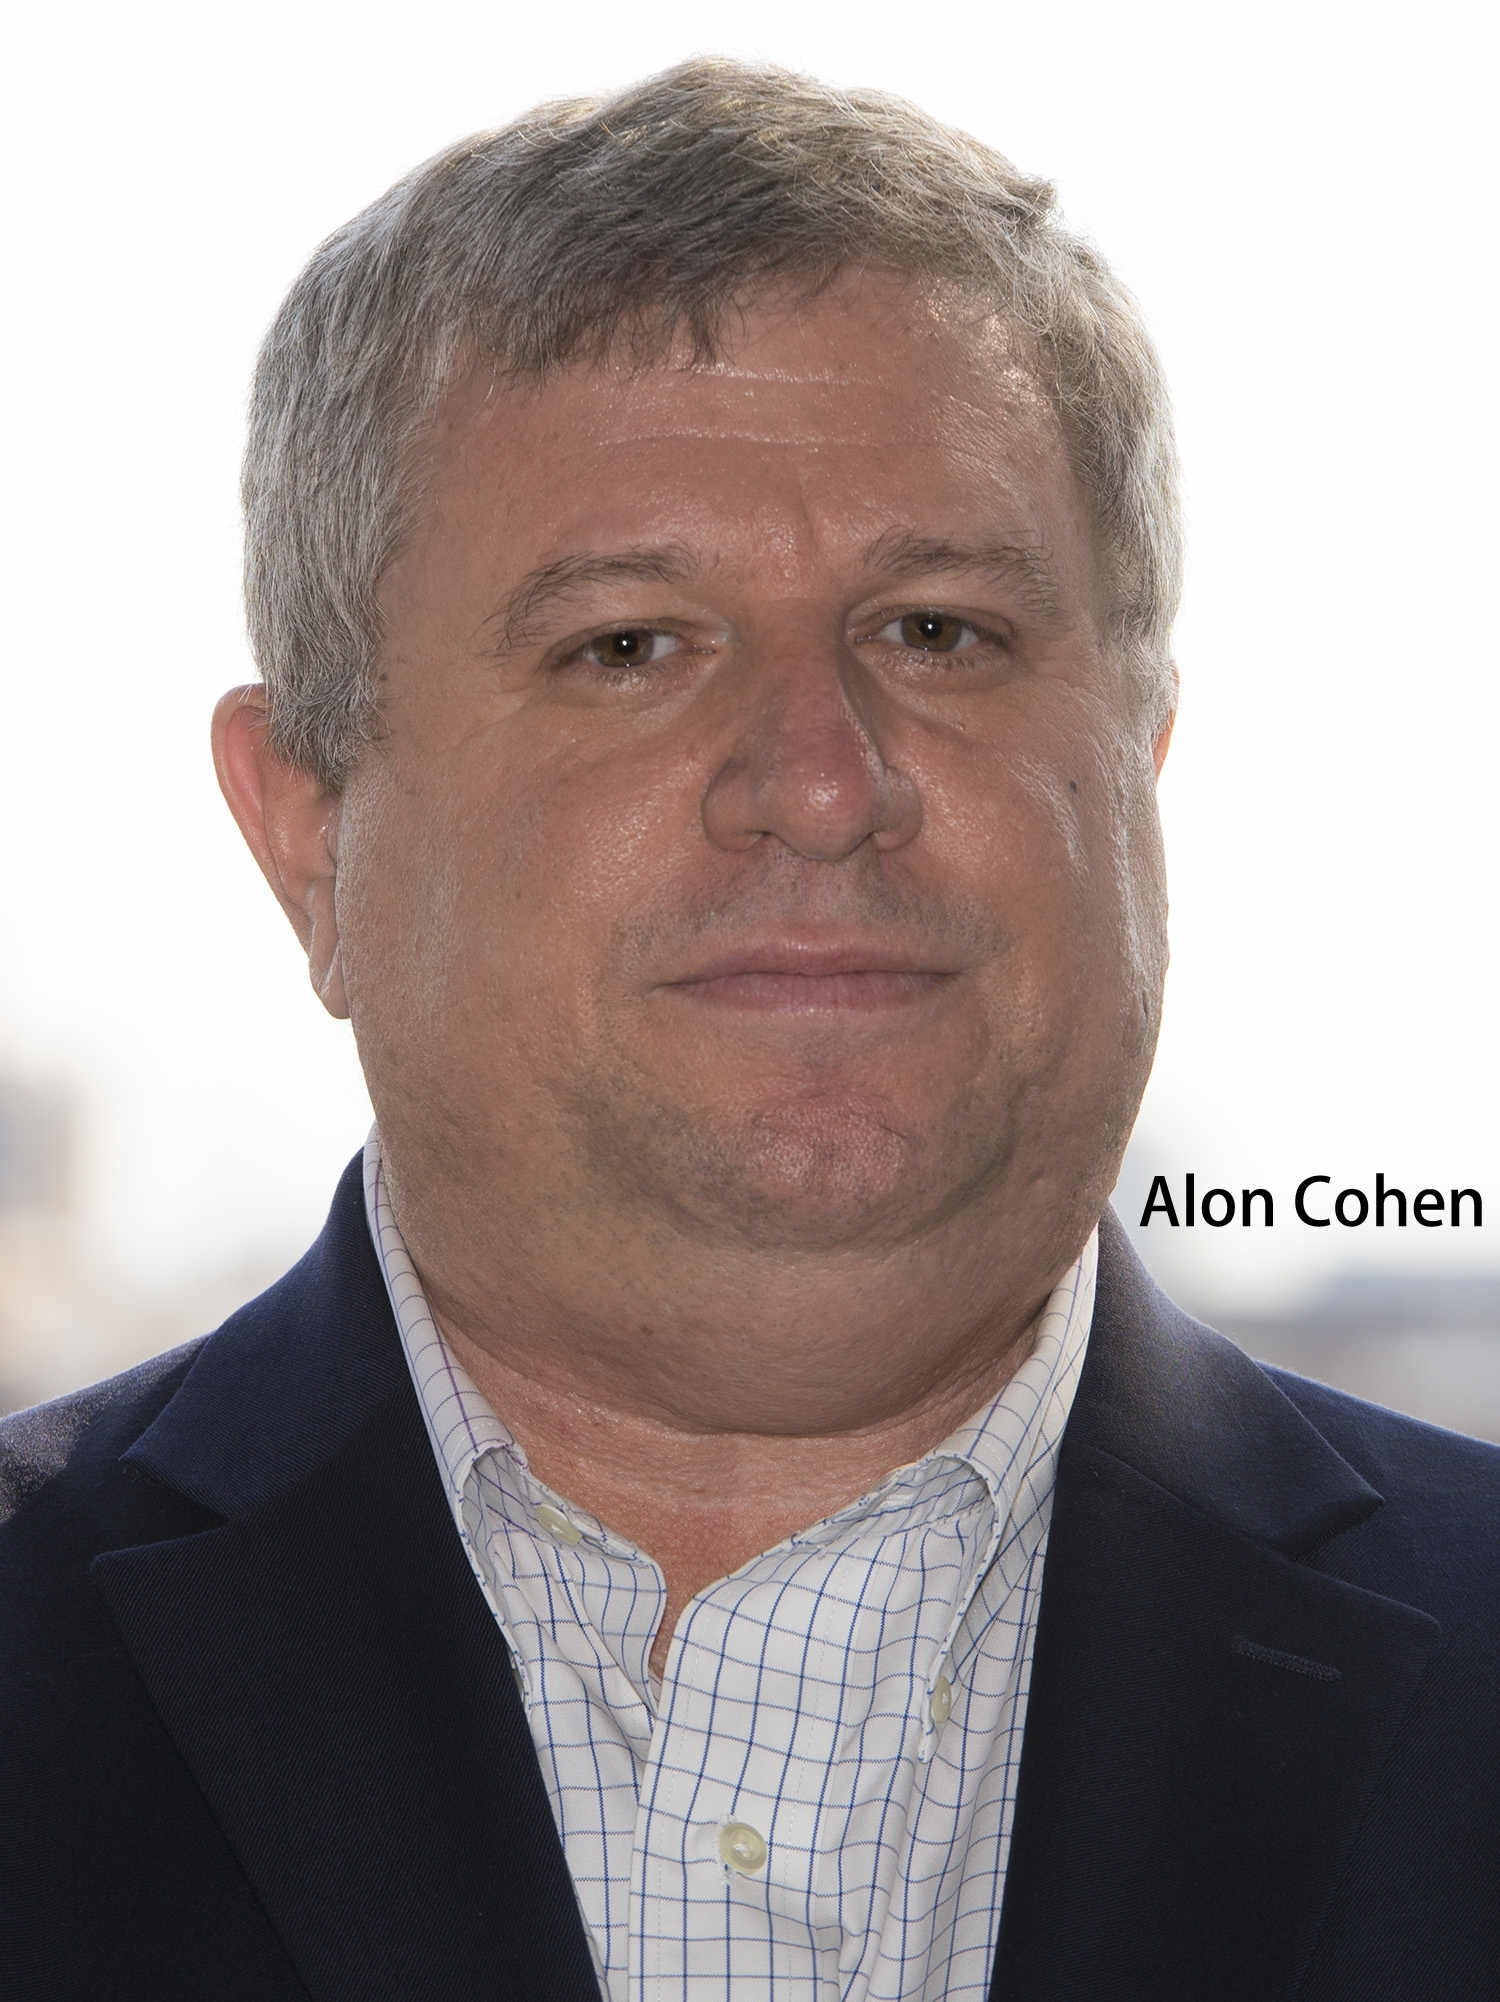 Alon Cohen